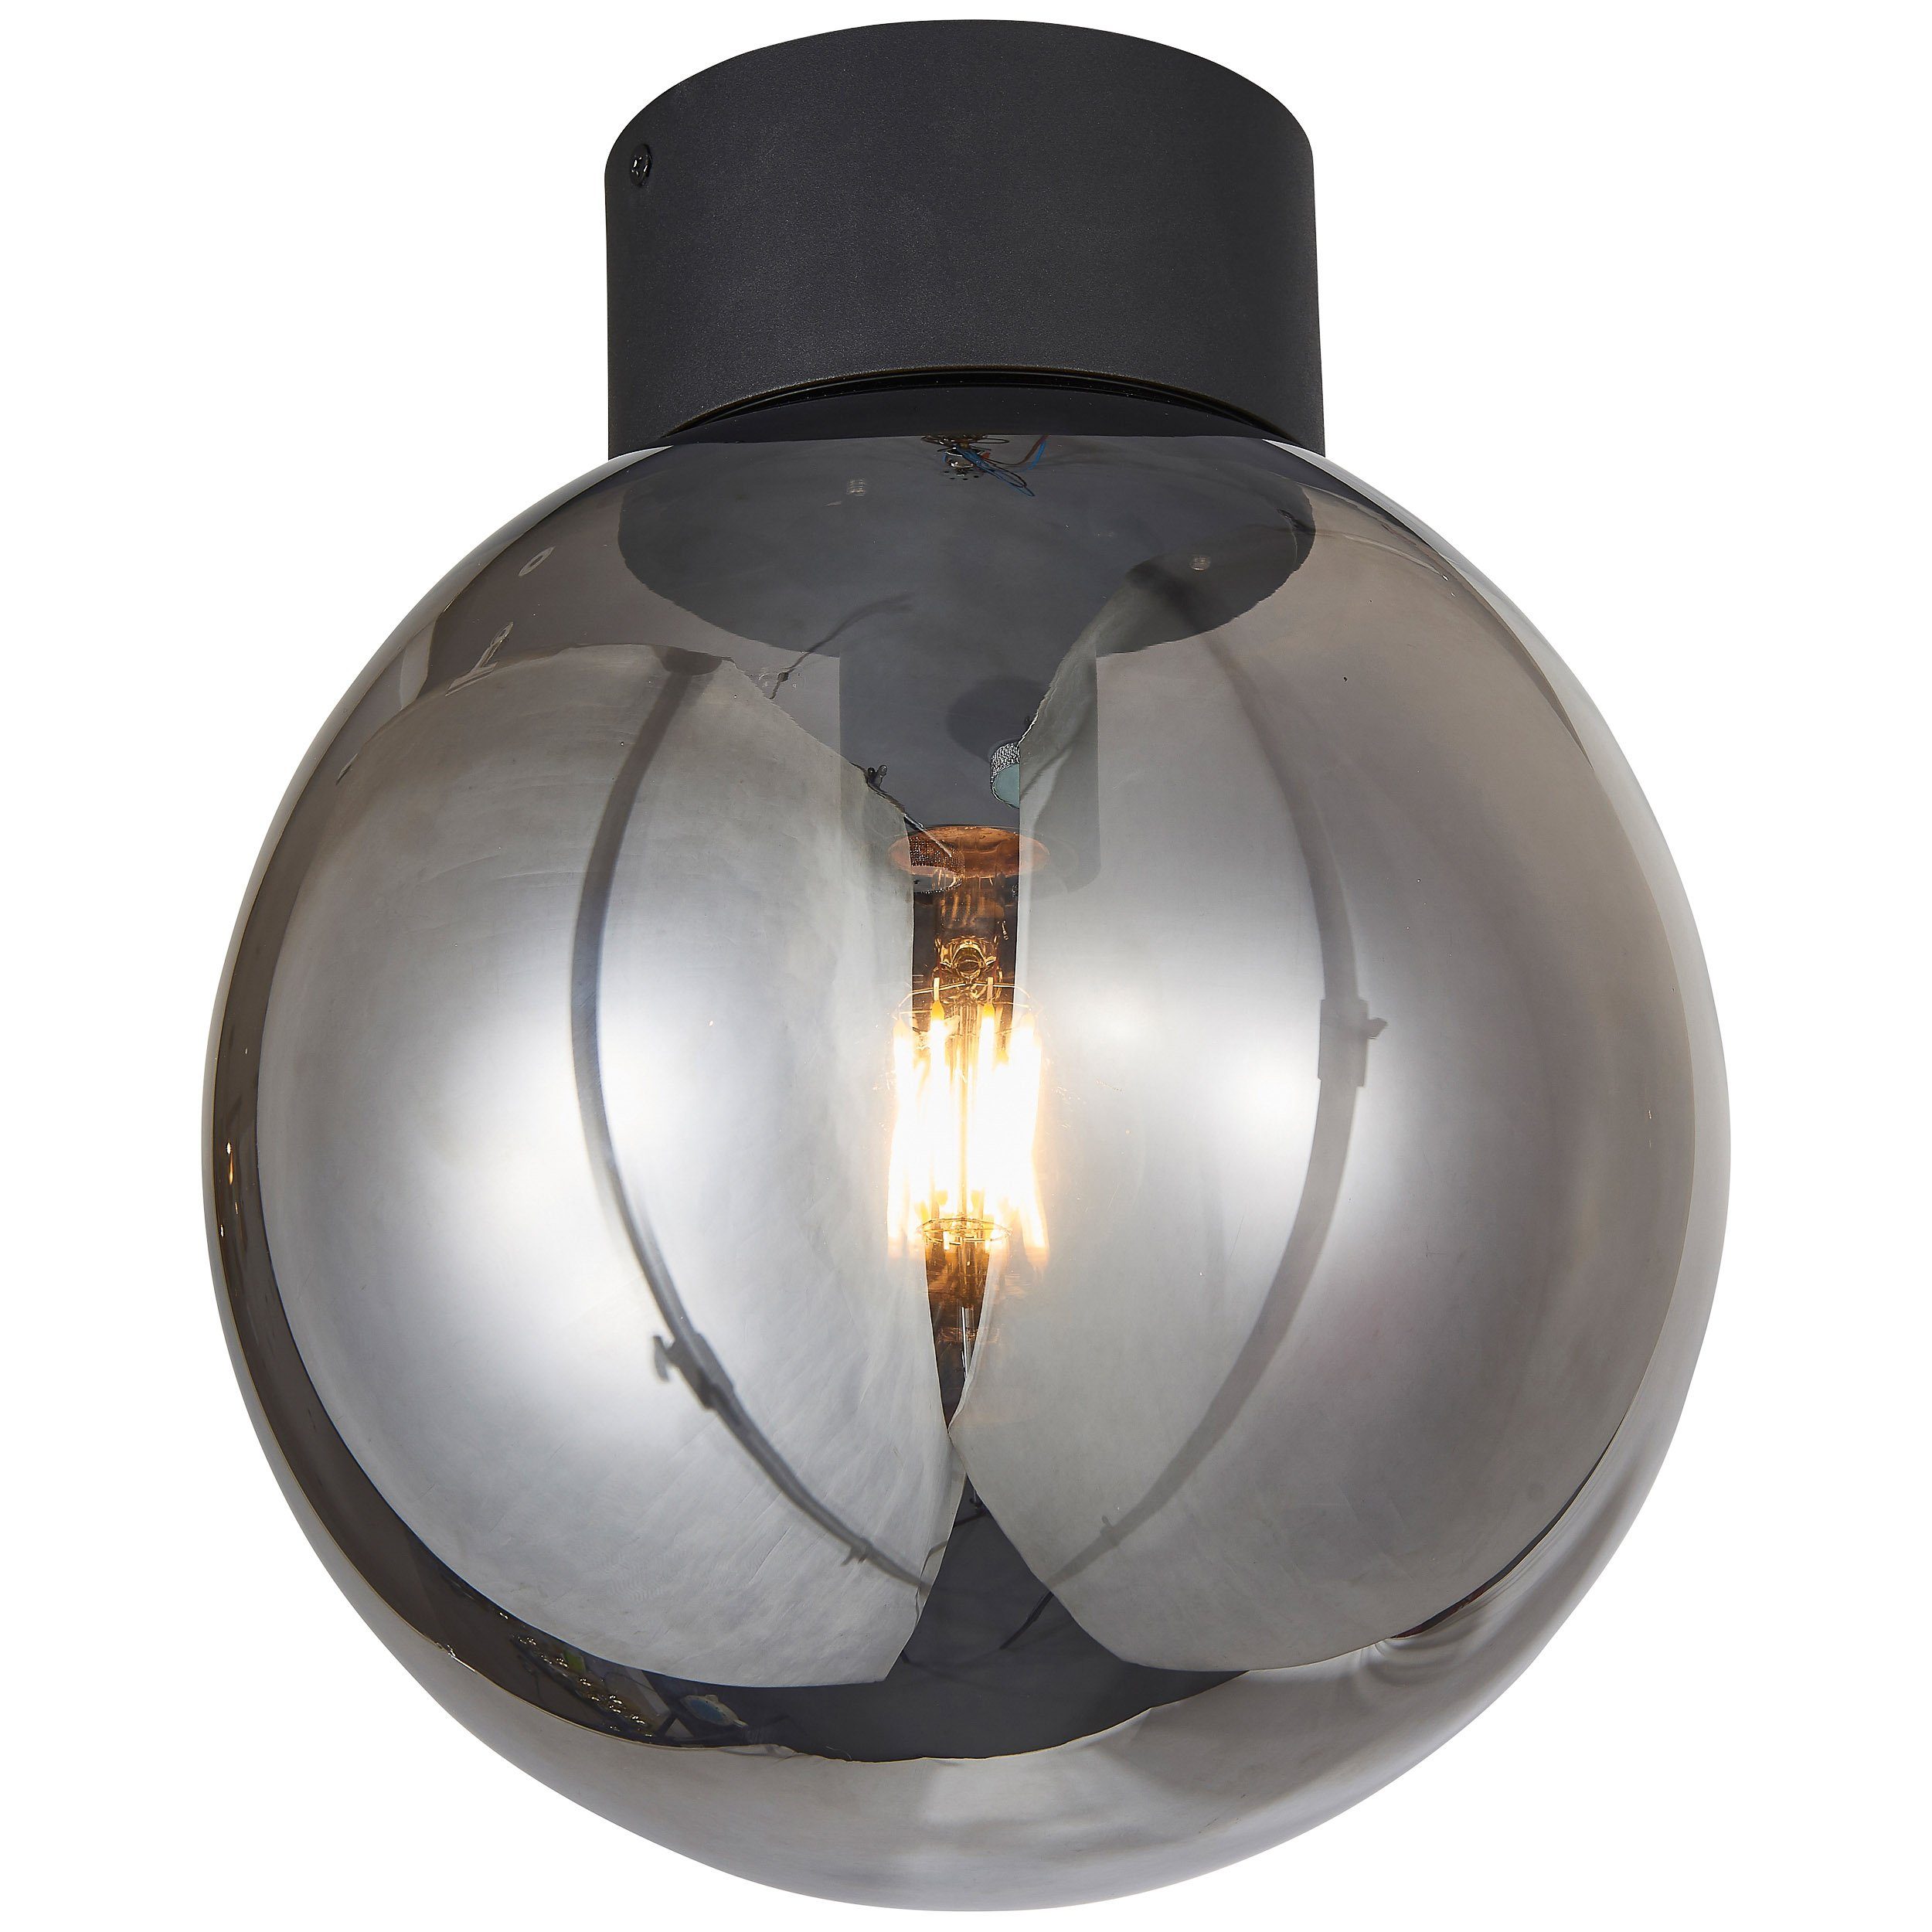 Brilliant Deckenleuchte Lampe 25cm A60, E27, 60W, 1x g Astro Astro, schwarz/rauchglas Deckenleuchte